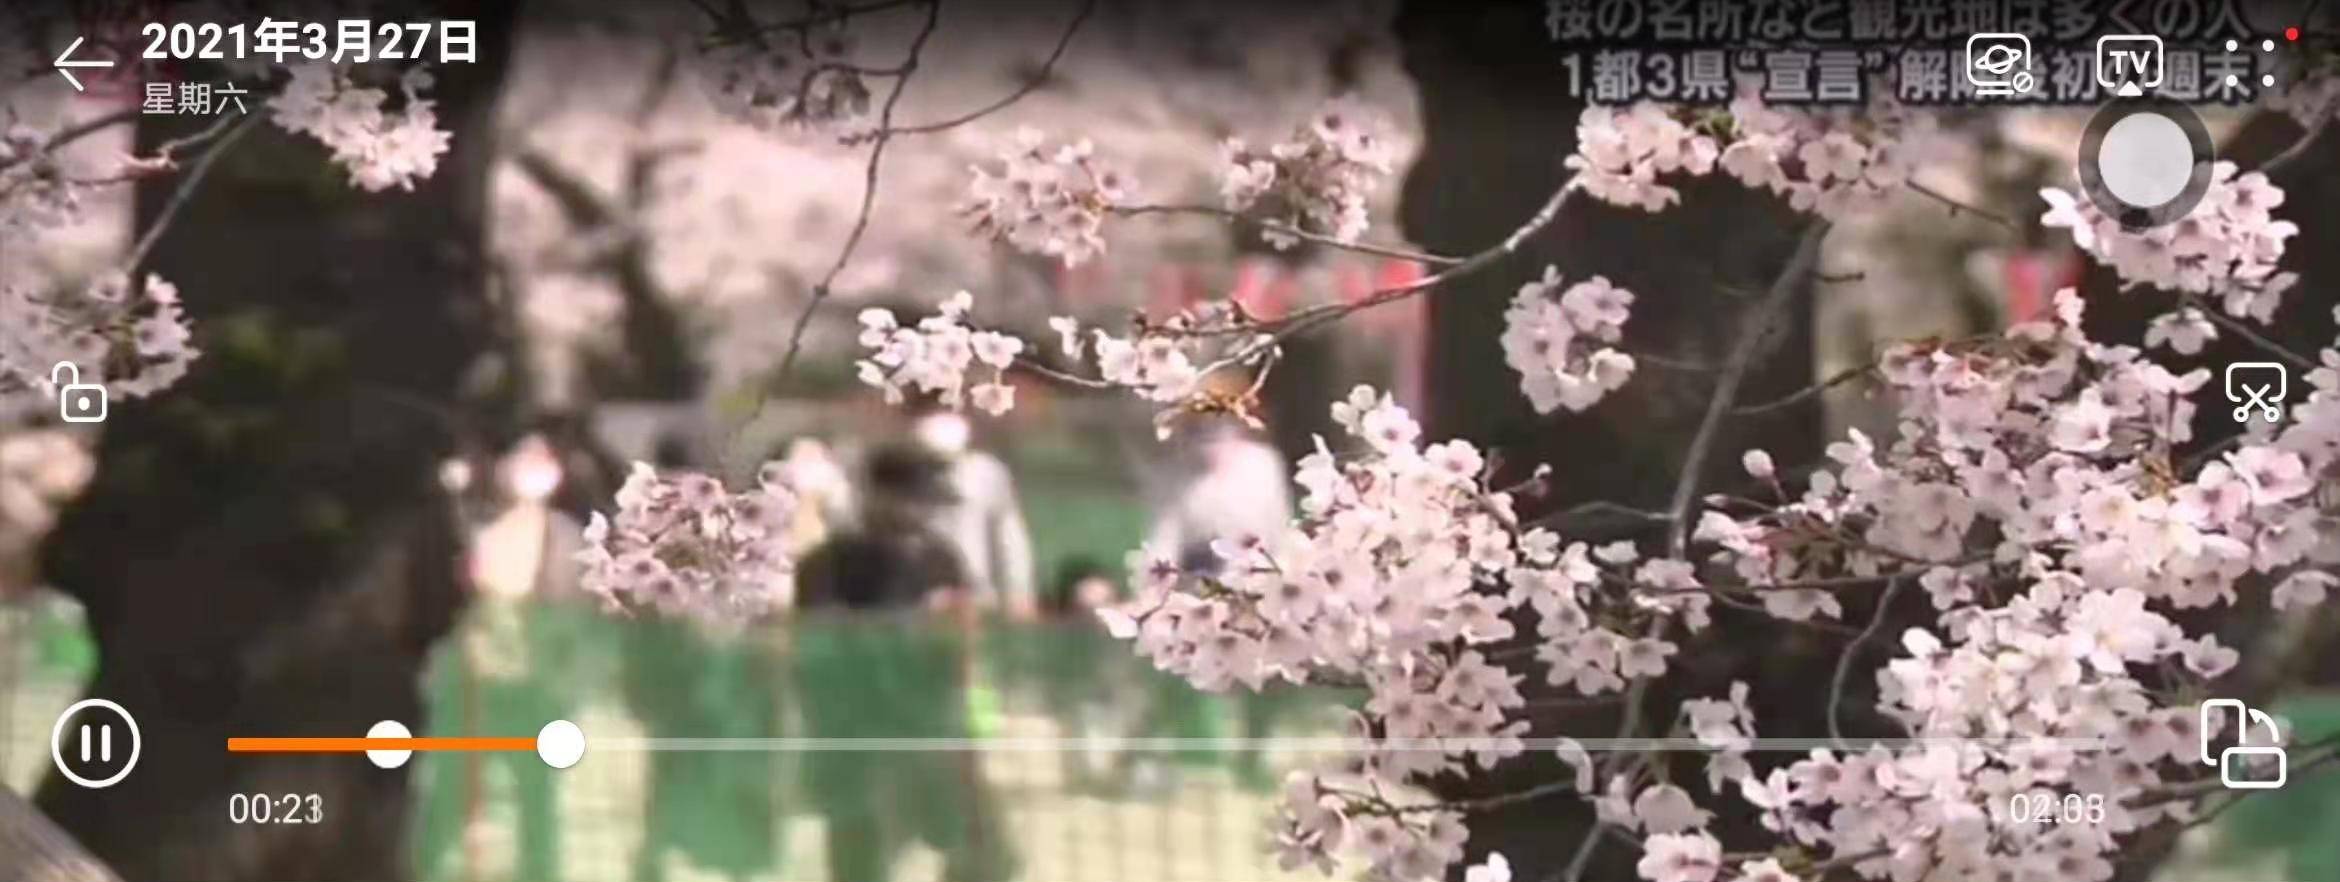 日本东京樱花正值盛开时节,周末著名赏樱地点聚集了赏樱的民众